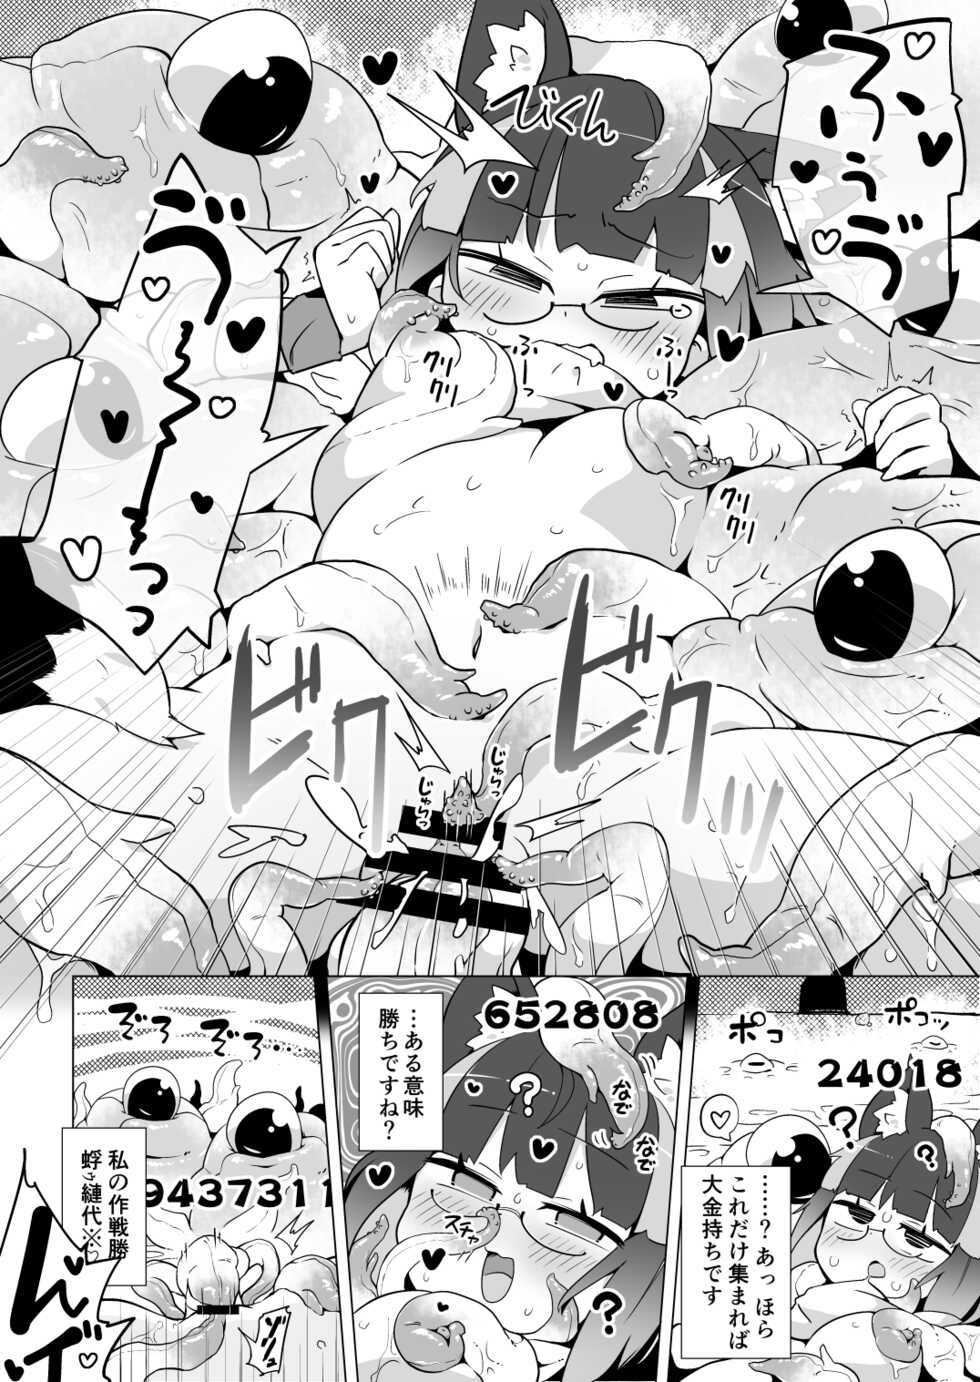 [Watashi ga Ichiban Kawaii (various)] Reginetta-san no Bouken Special Edition - Page 31